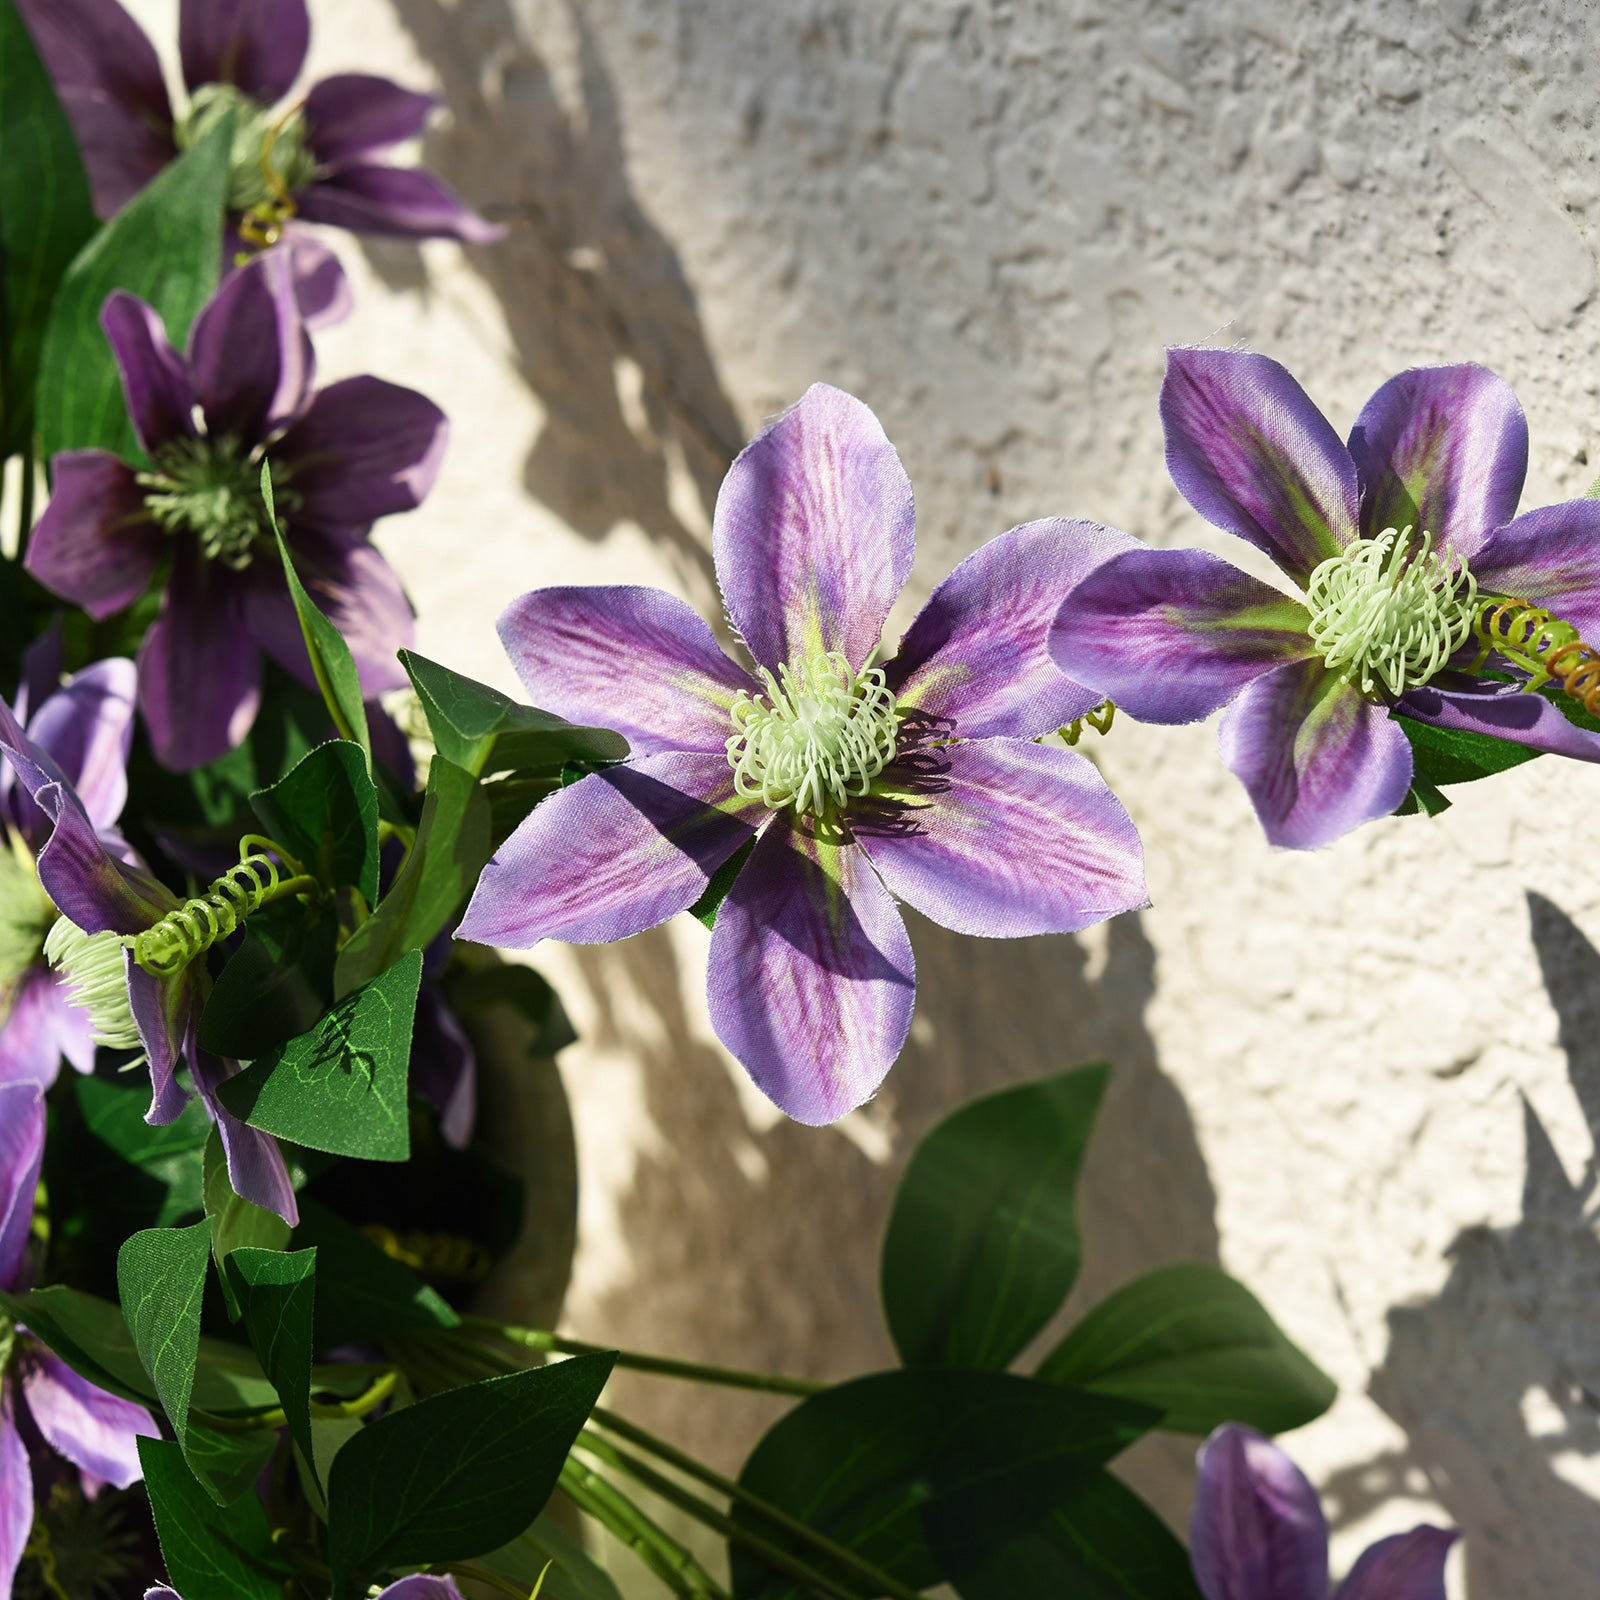 FiveSeasonStuff 6 Stems Artificial Plant Clematis Flowers Vine Kitchen Garden Party Decoration (Blue Violet)